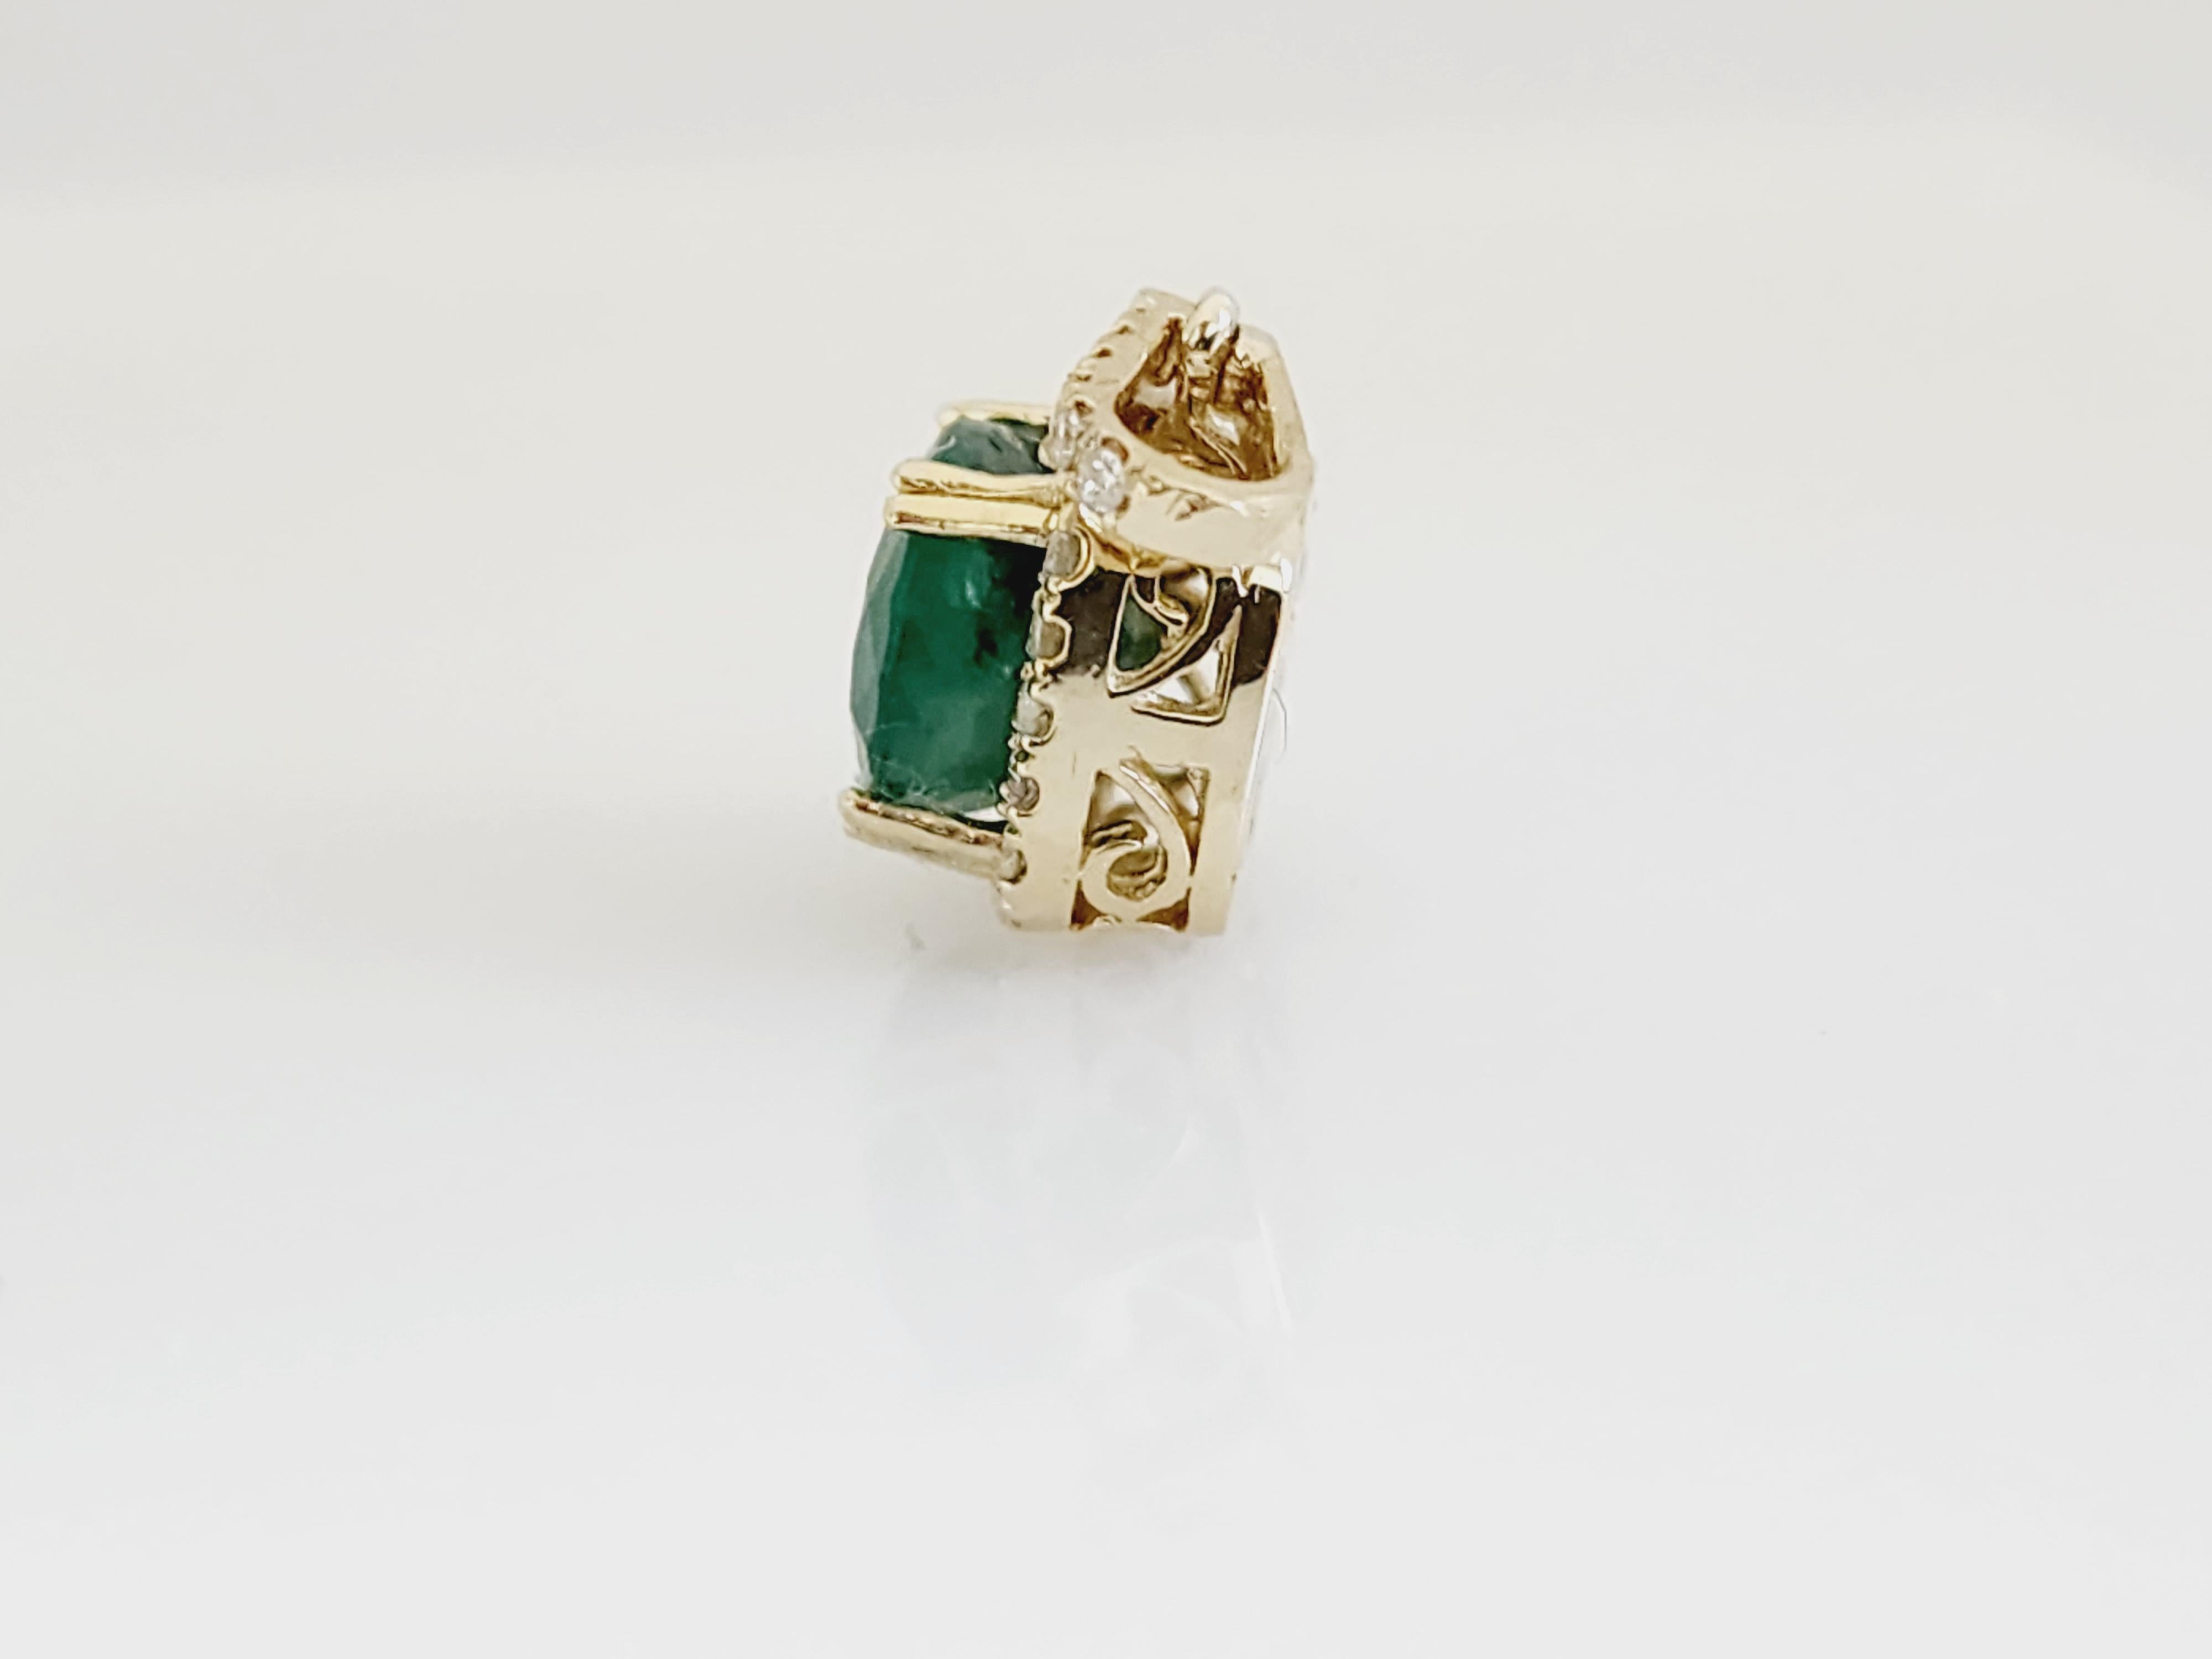 Emerald Cut 3.80 Carats Natural Emerald Diamond Pendant Yellow Gold 14 Karat For Sale